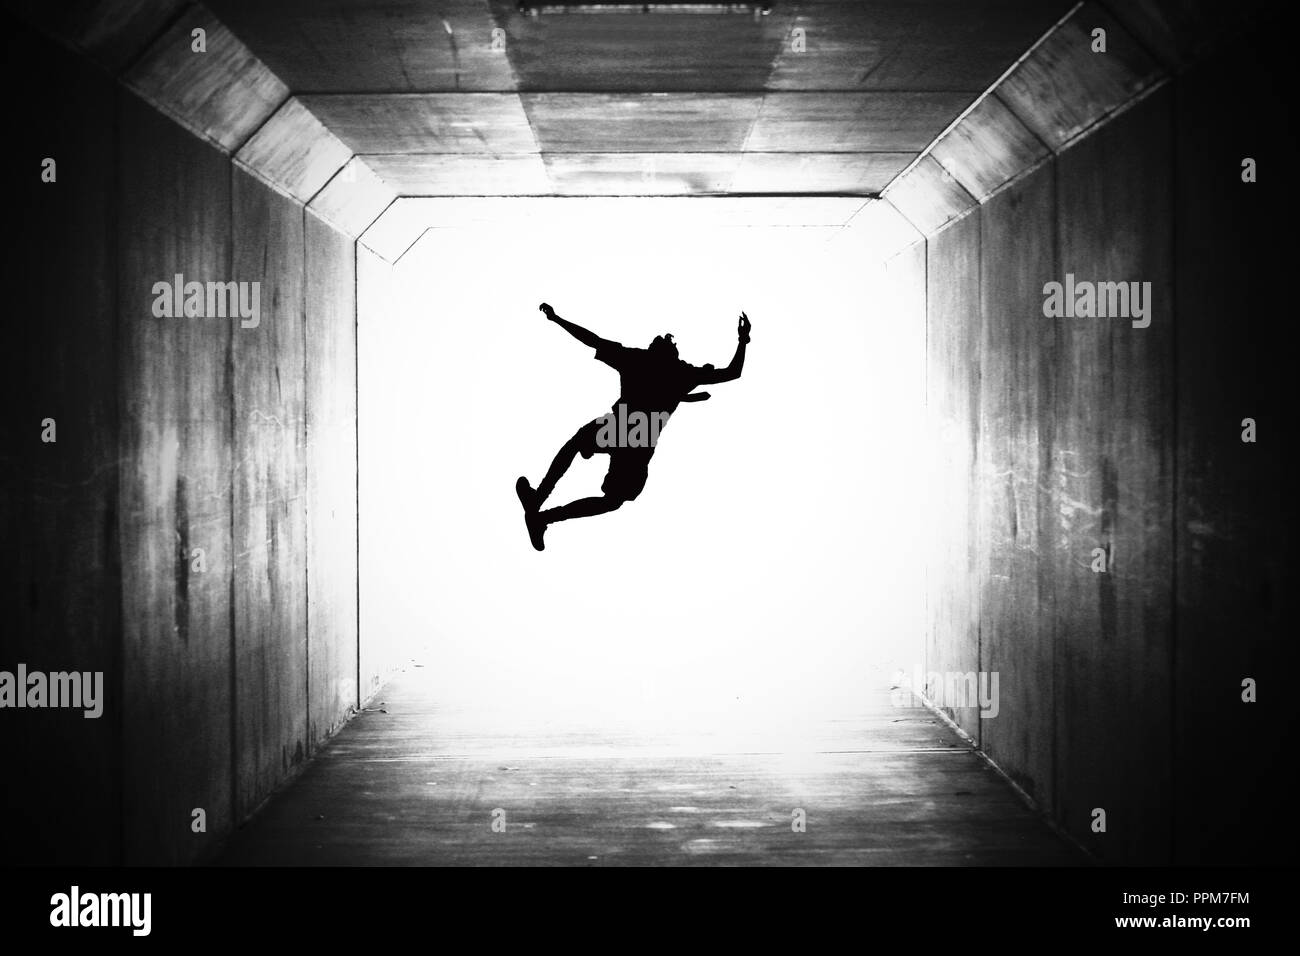 BW schwarz-weiß Bild von einer einzigen Schule Schüler springen auf und klicken auf den Fersen in einem Tunnel. Fahren Sie in Richtung Licht, Graduierung Stockfoto